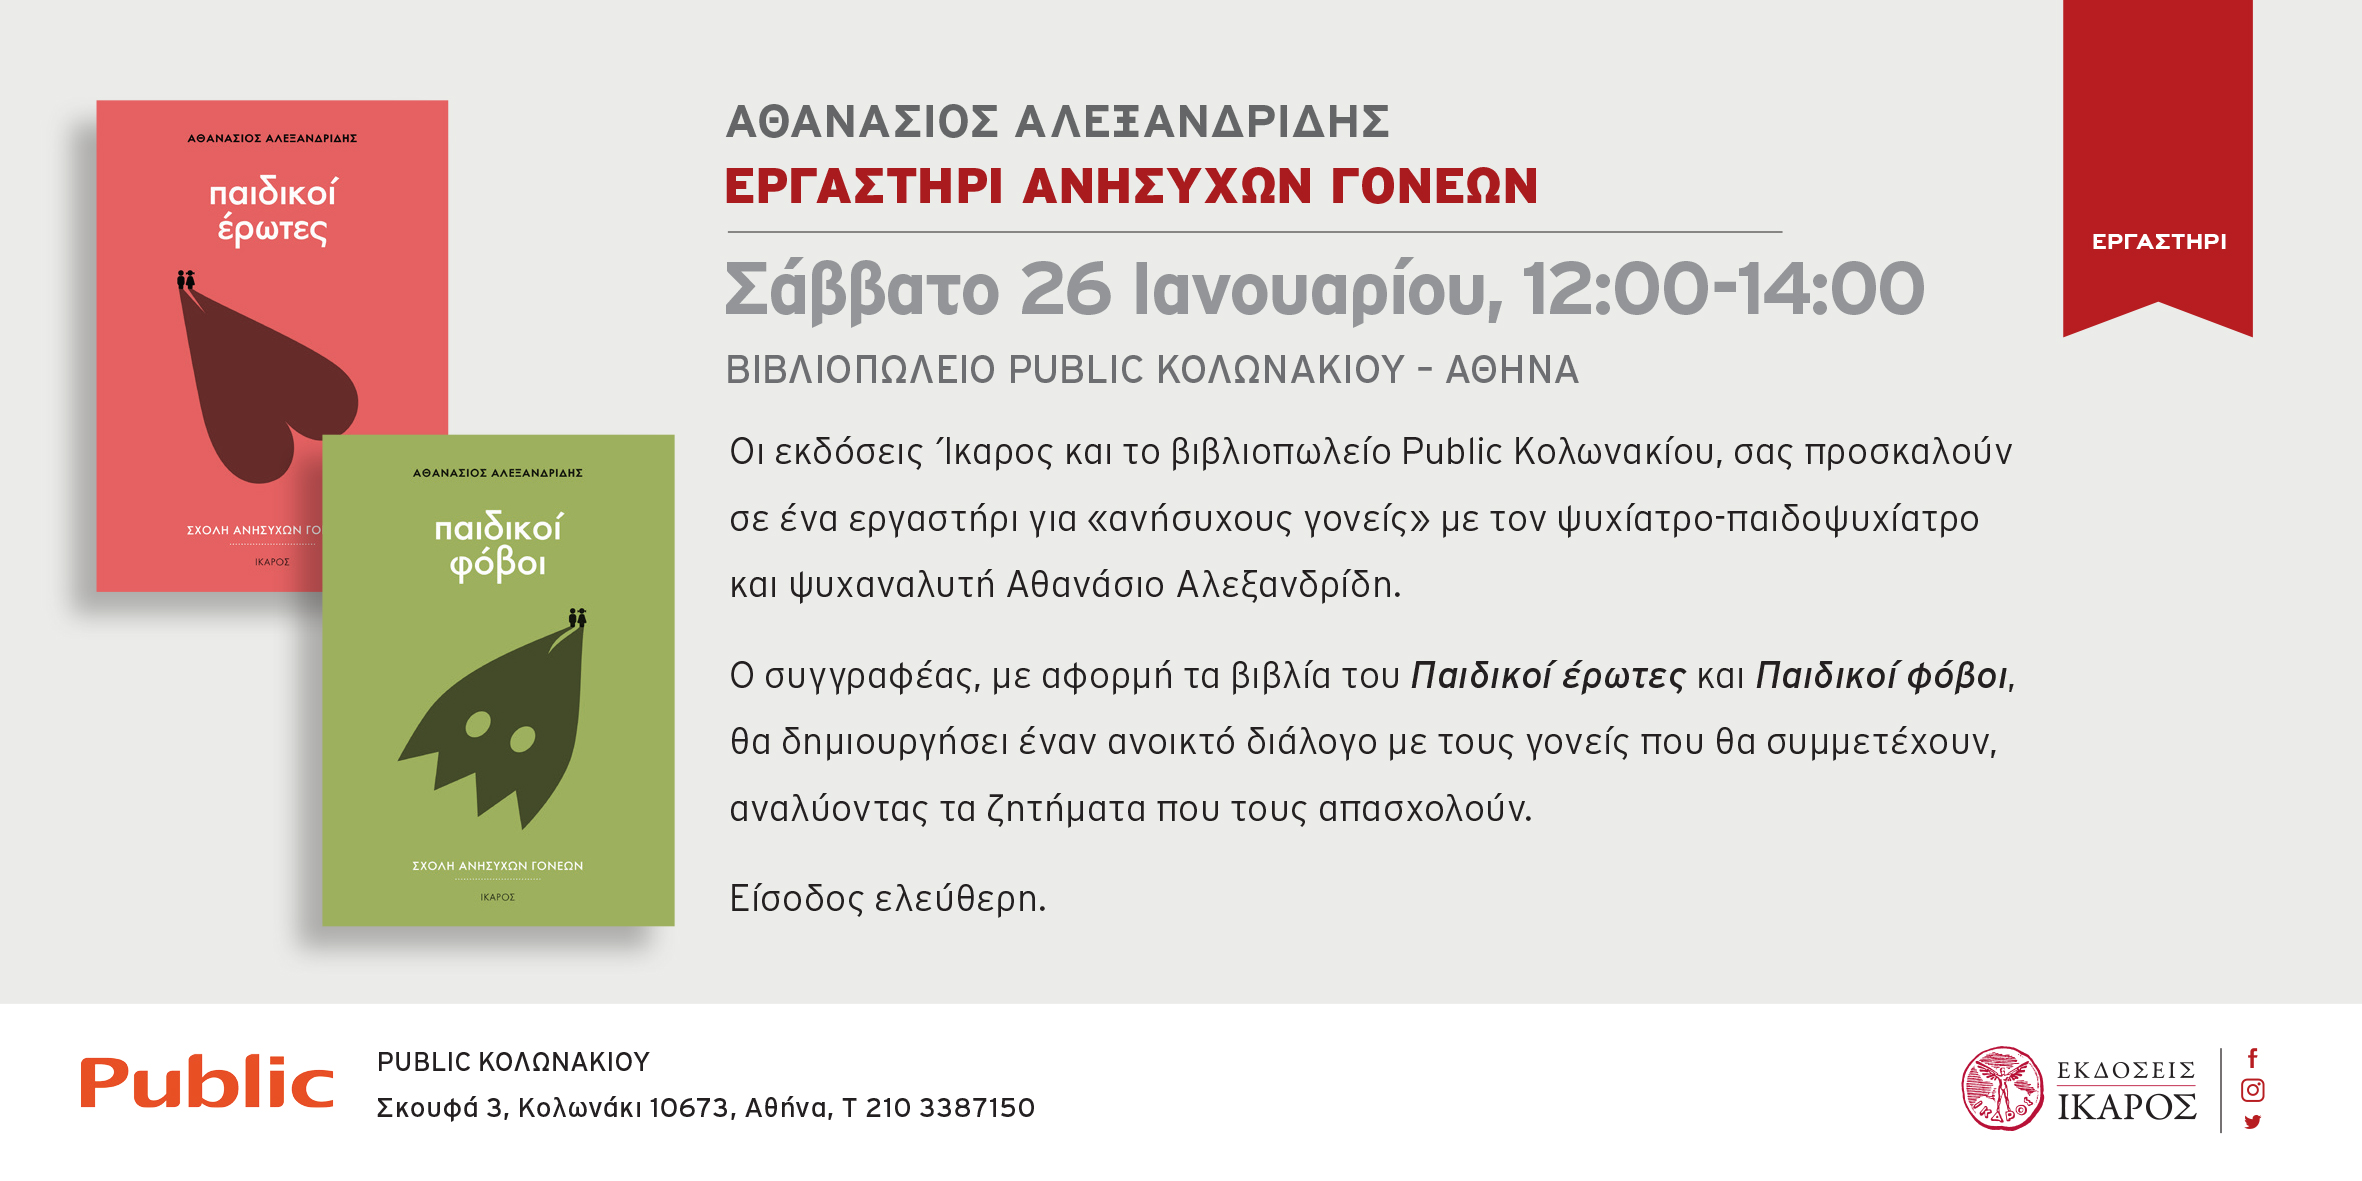 Εργαστήρι «Ανήσυχων γονέων» του Αθανάσιου Αλεξανδρίδη στο βιβλιοπωλείο Public Κολωνακίου